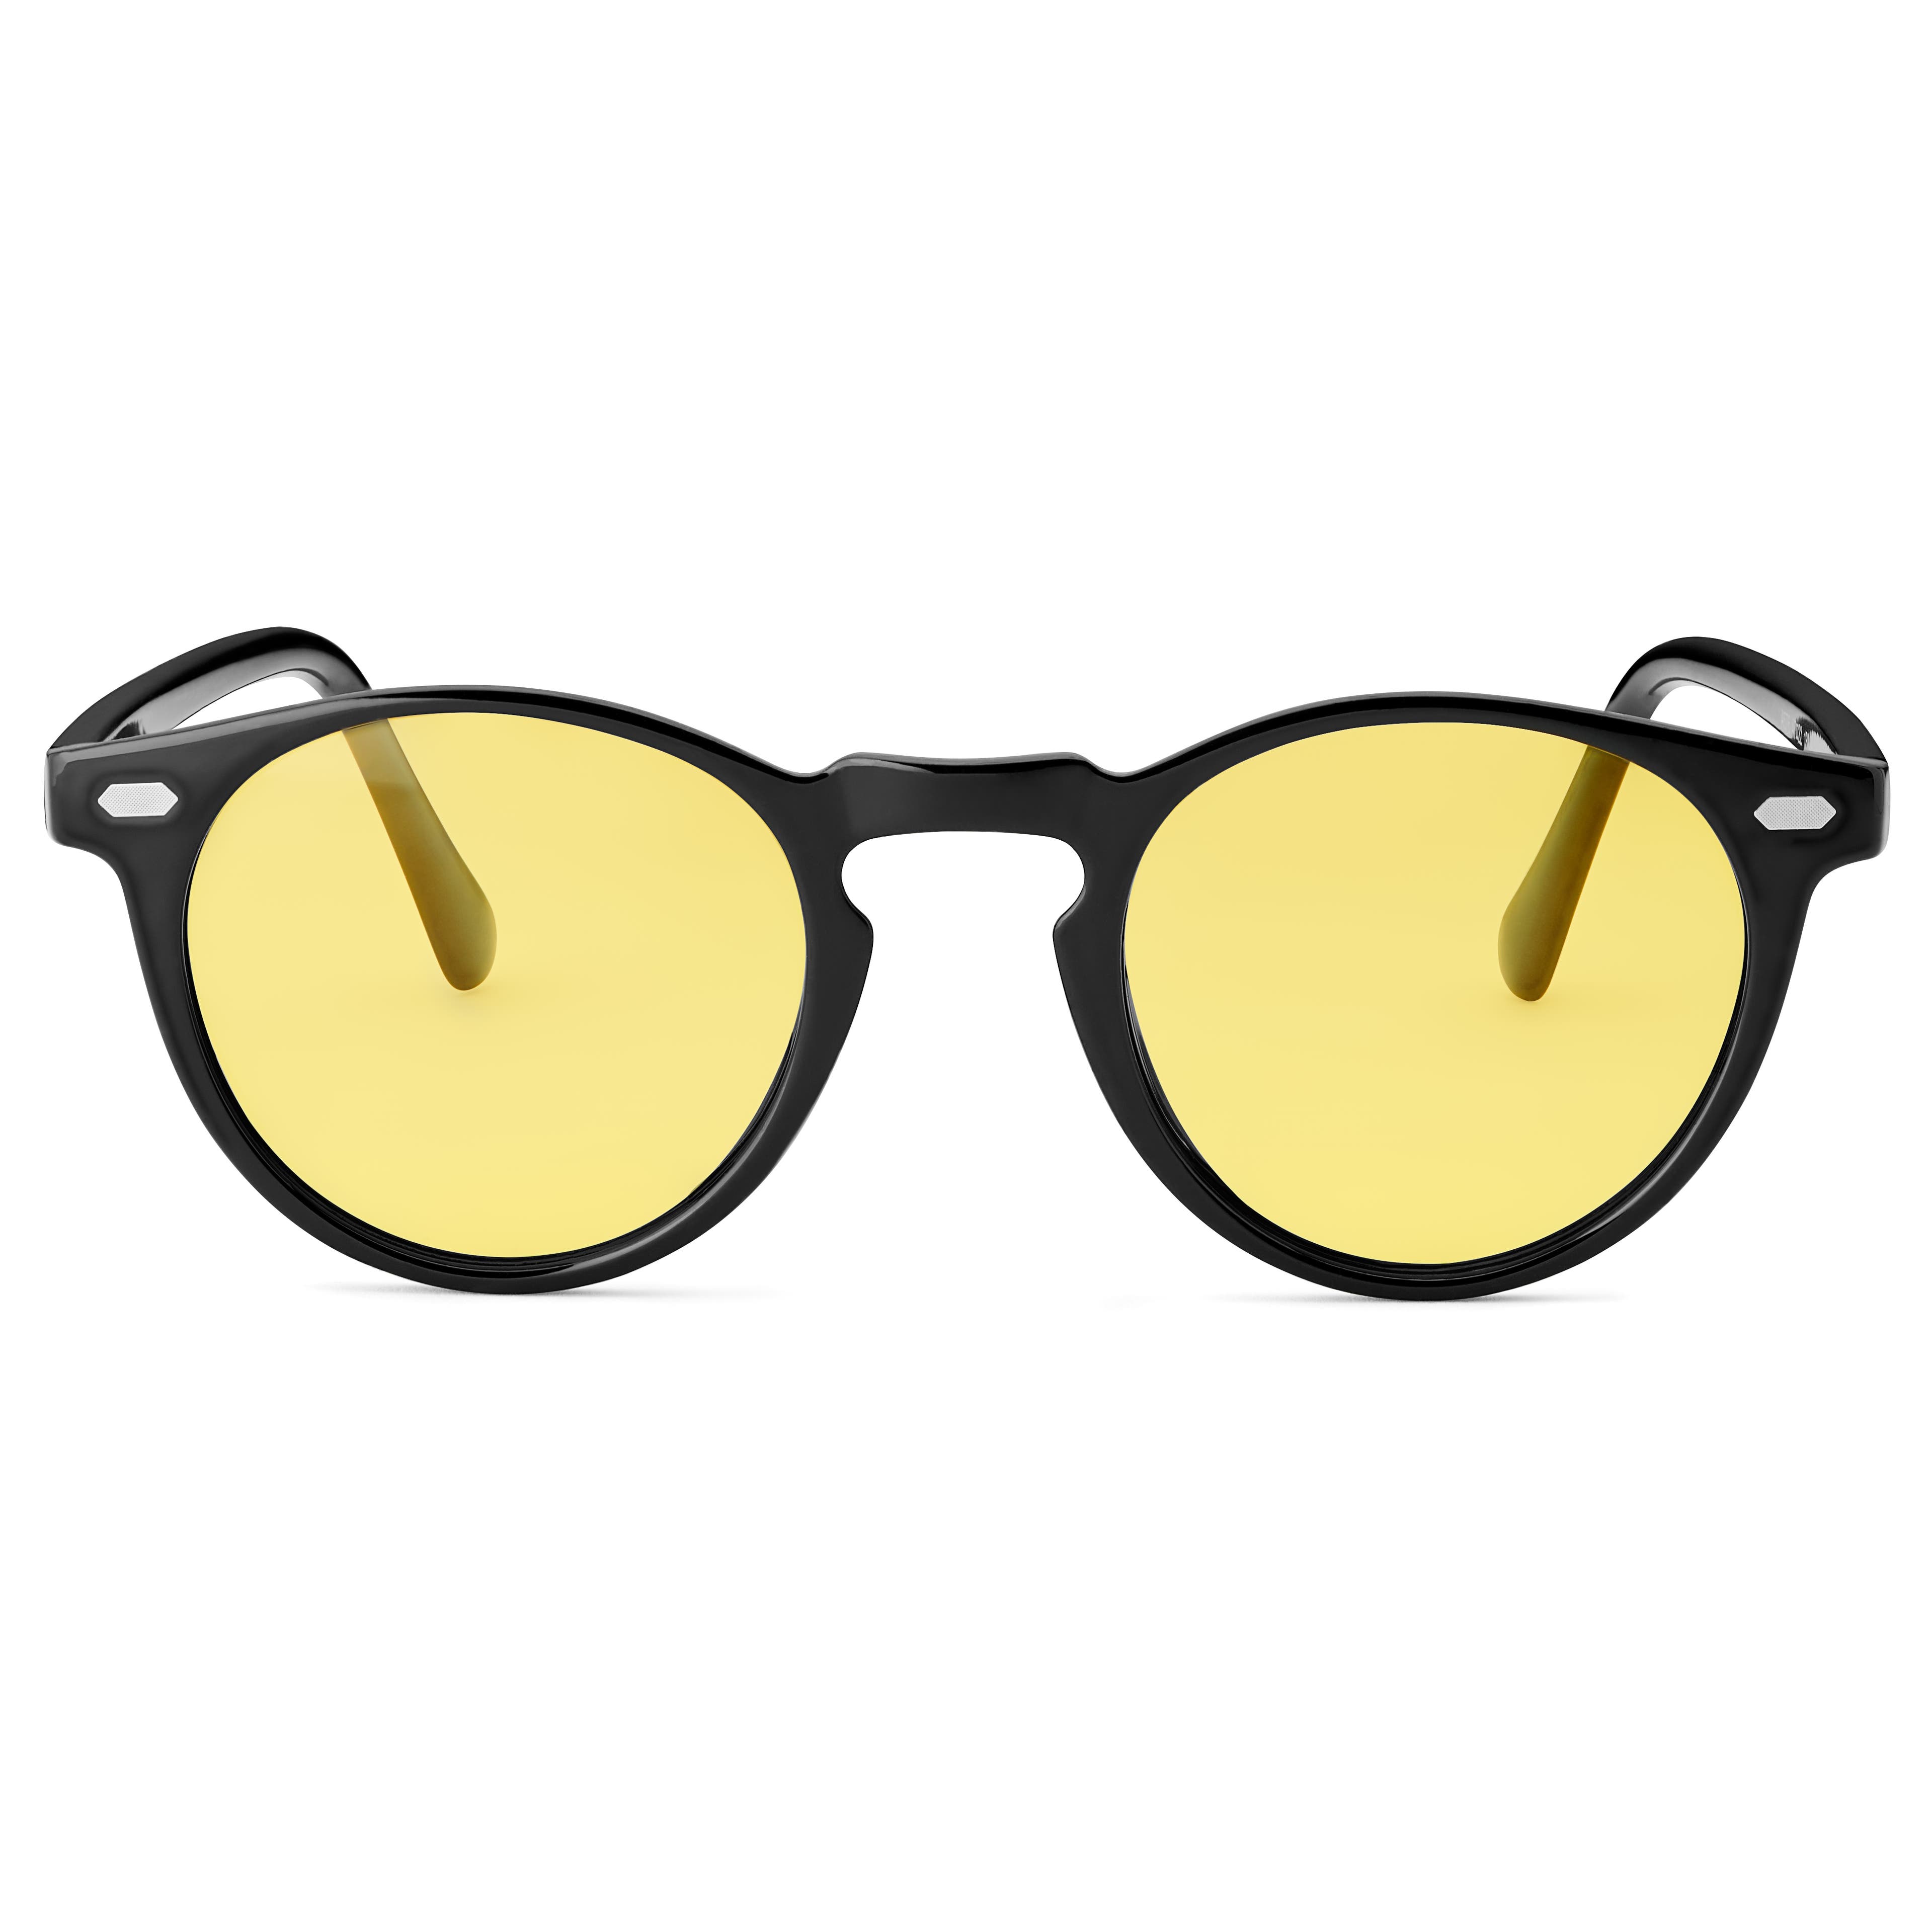 Okrúhle retro polarizačné slnečné okuliare v čiernej a žltej farbe